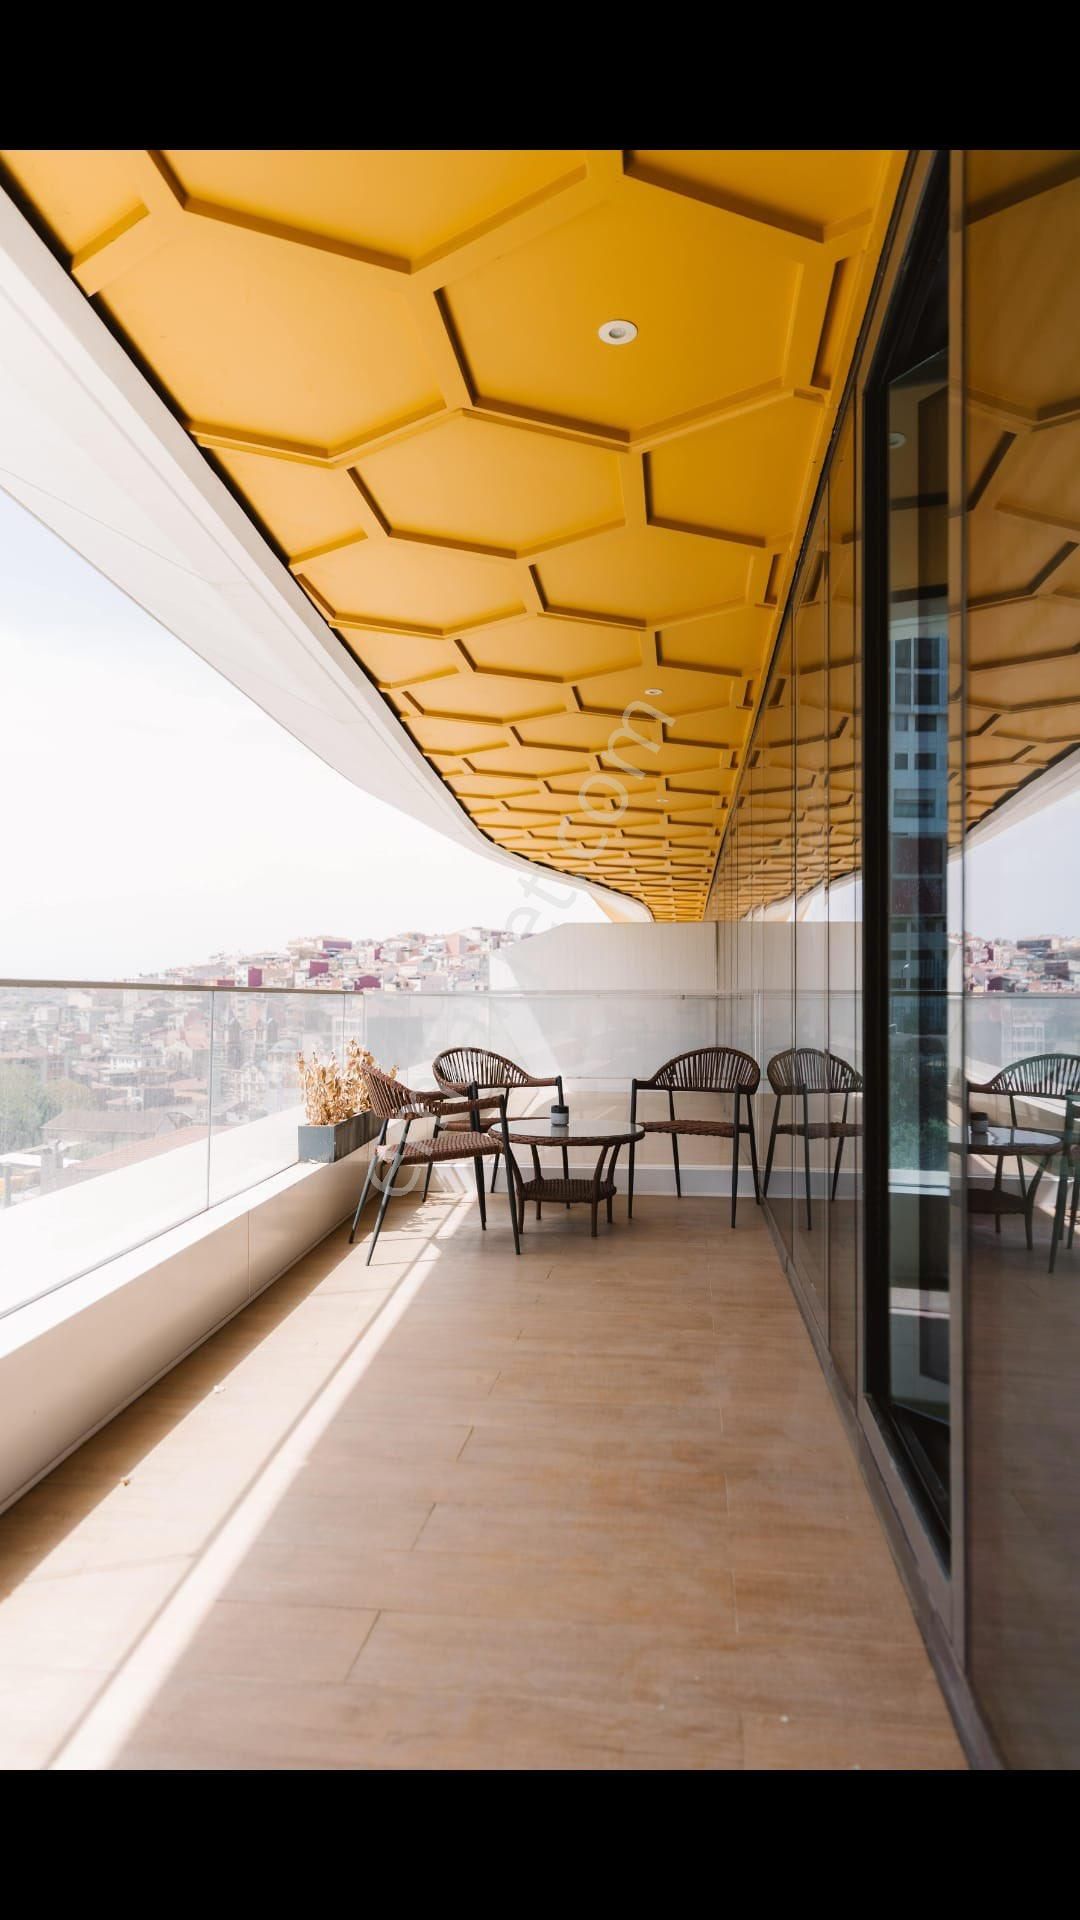 Şişli İnönü Kiralık Daire Taksim petek residence kiralık full eşyalı 1+1 daire